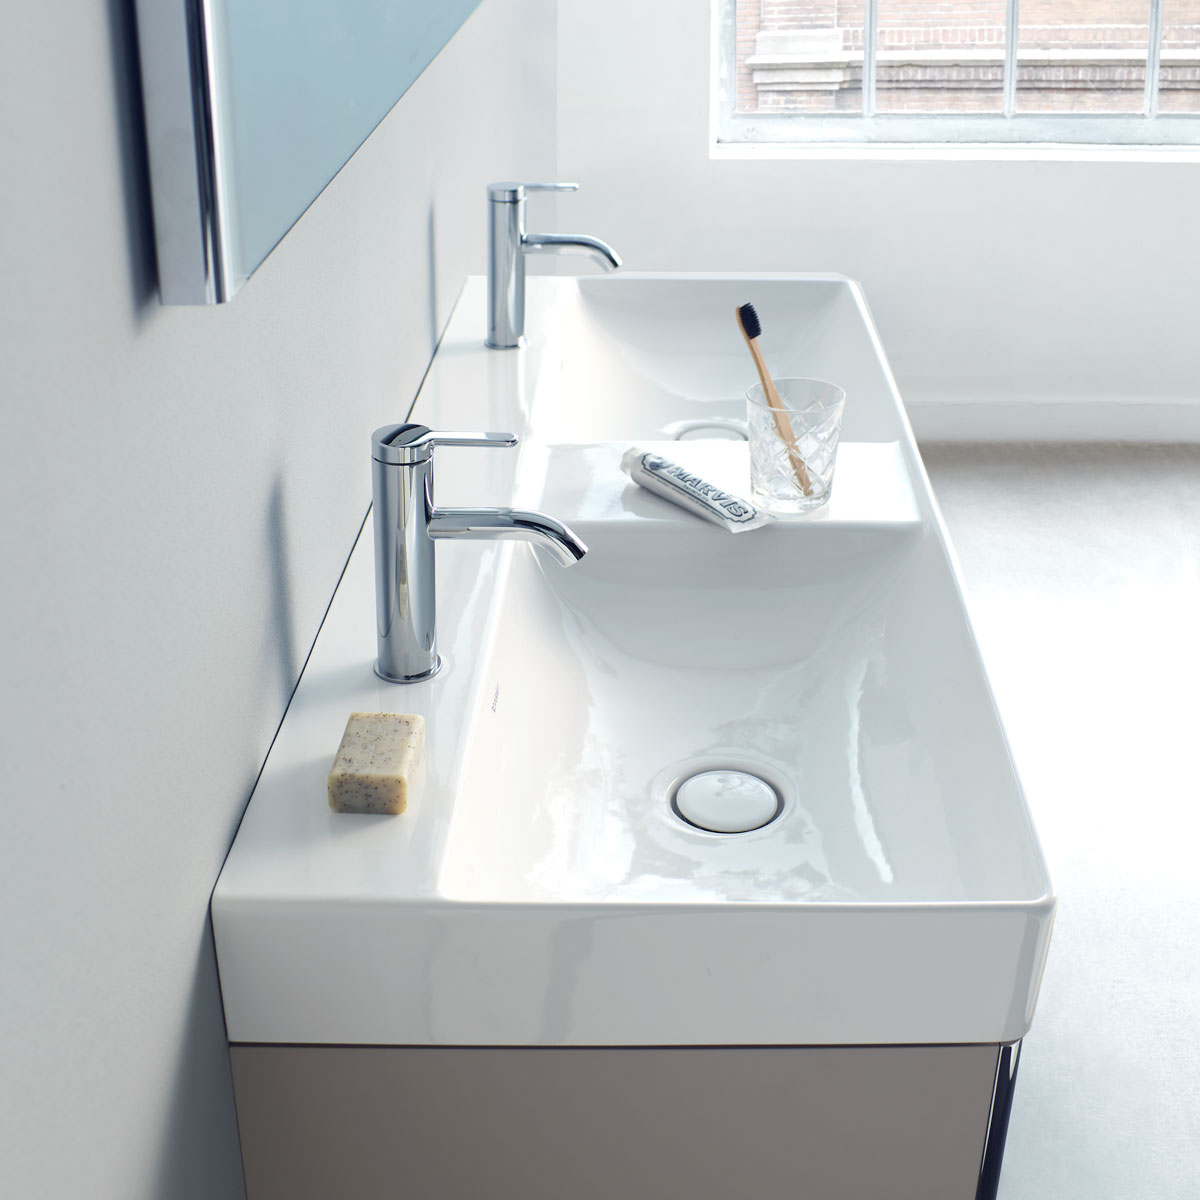 Double washbasin with vanity unit
